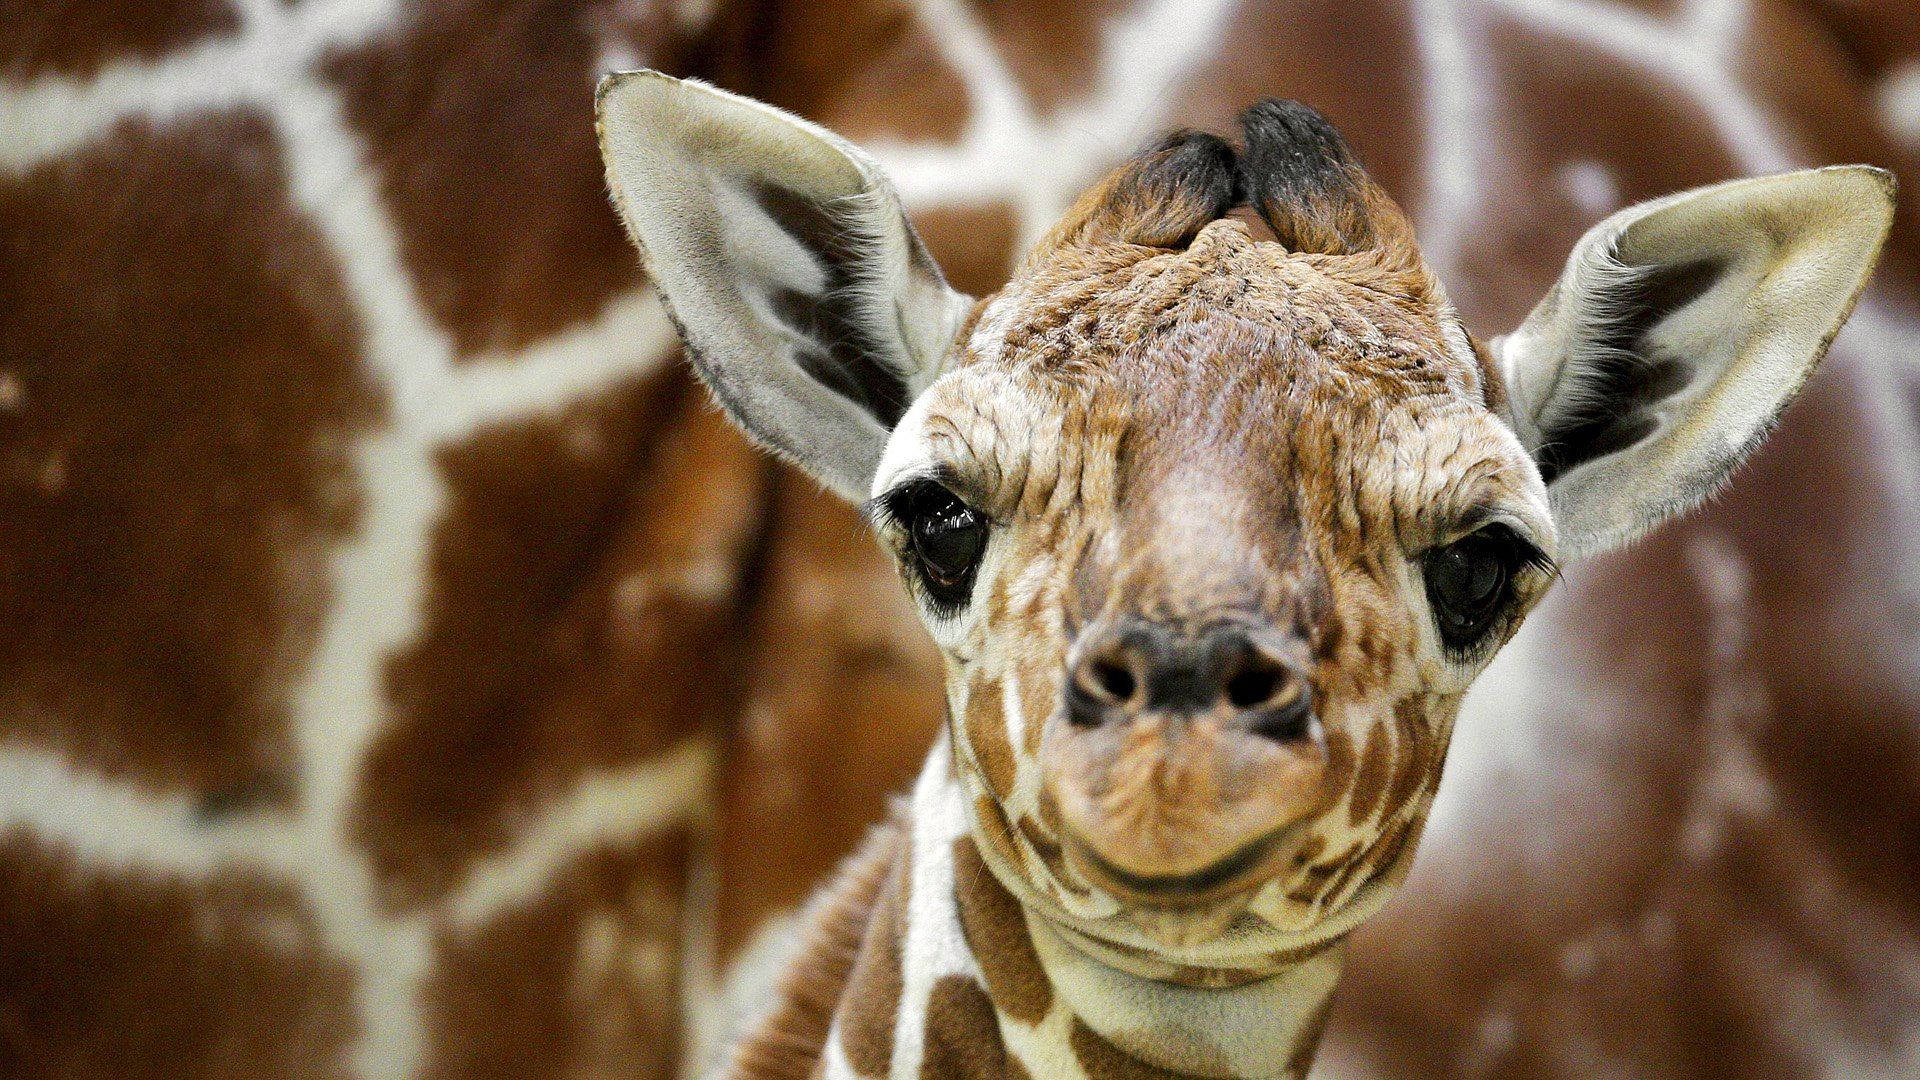 Baby Giraffe Cute Face